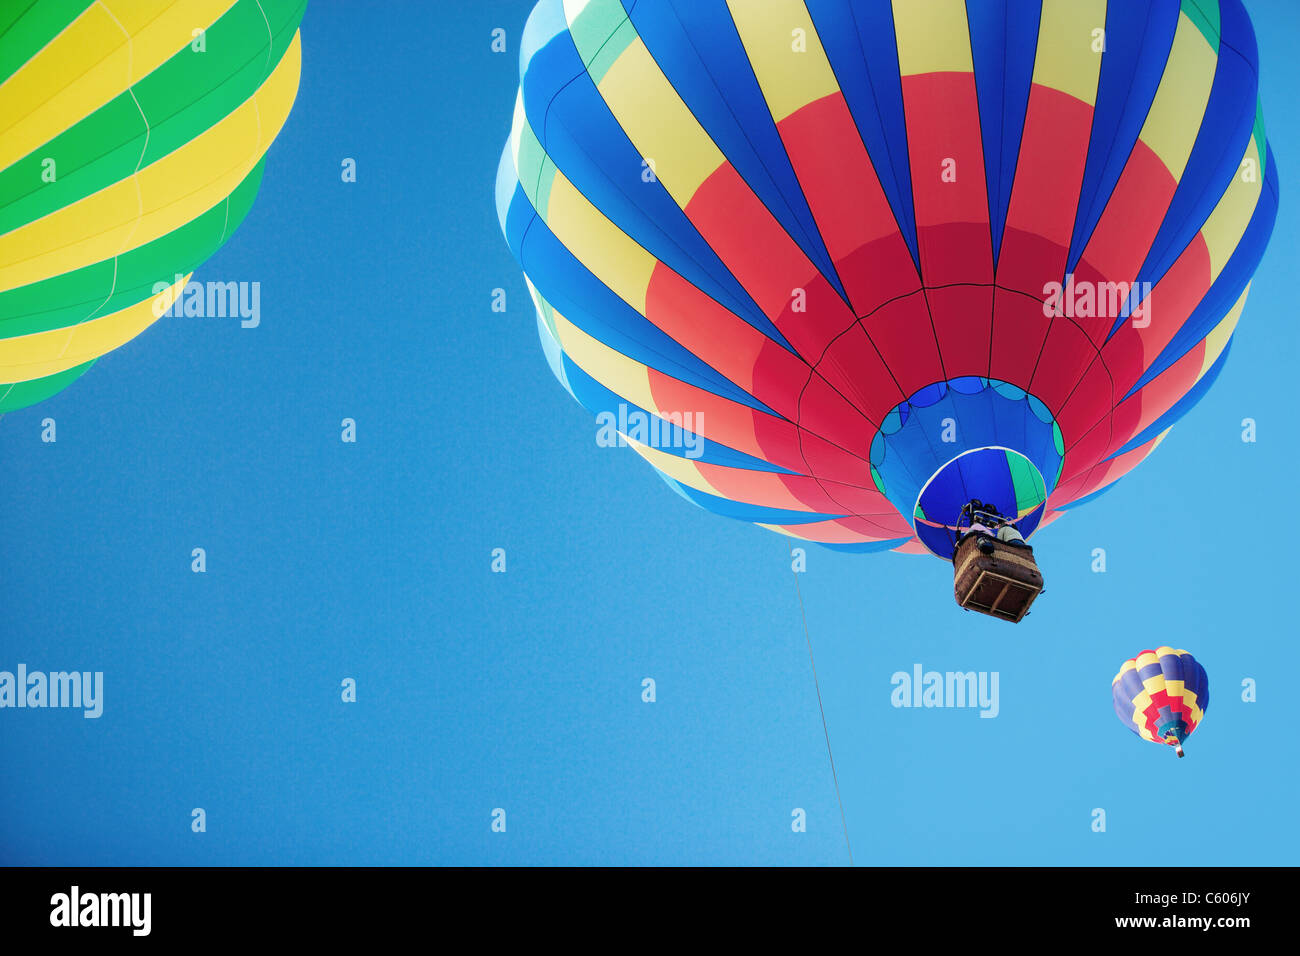 Trois ballons à air chaud s'élevant dans un ciel bleu Banque D'Images